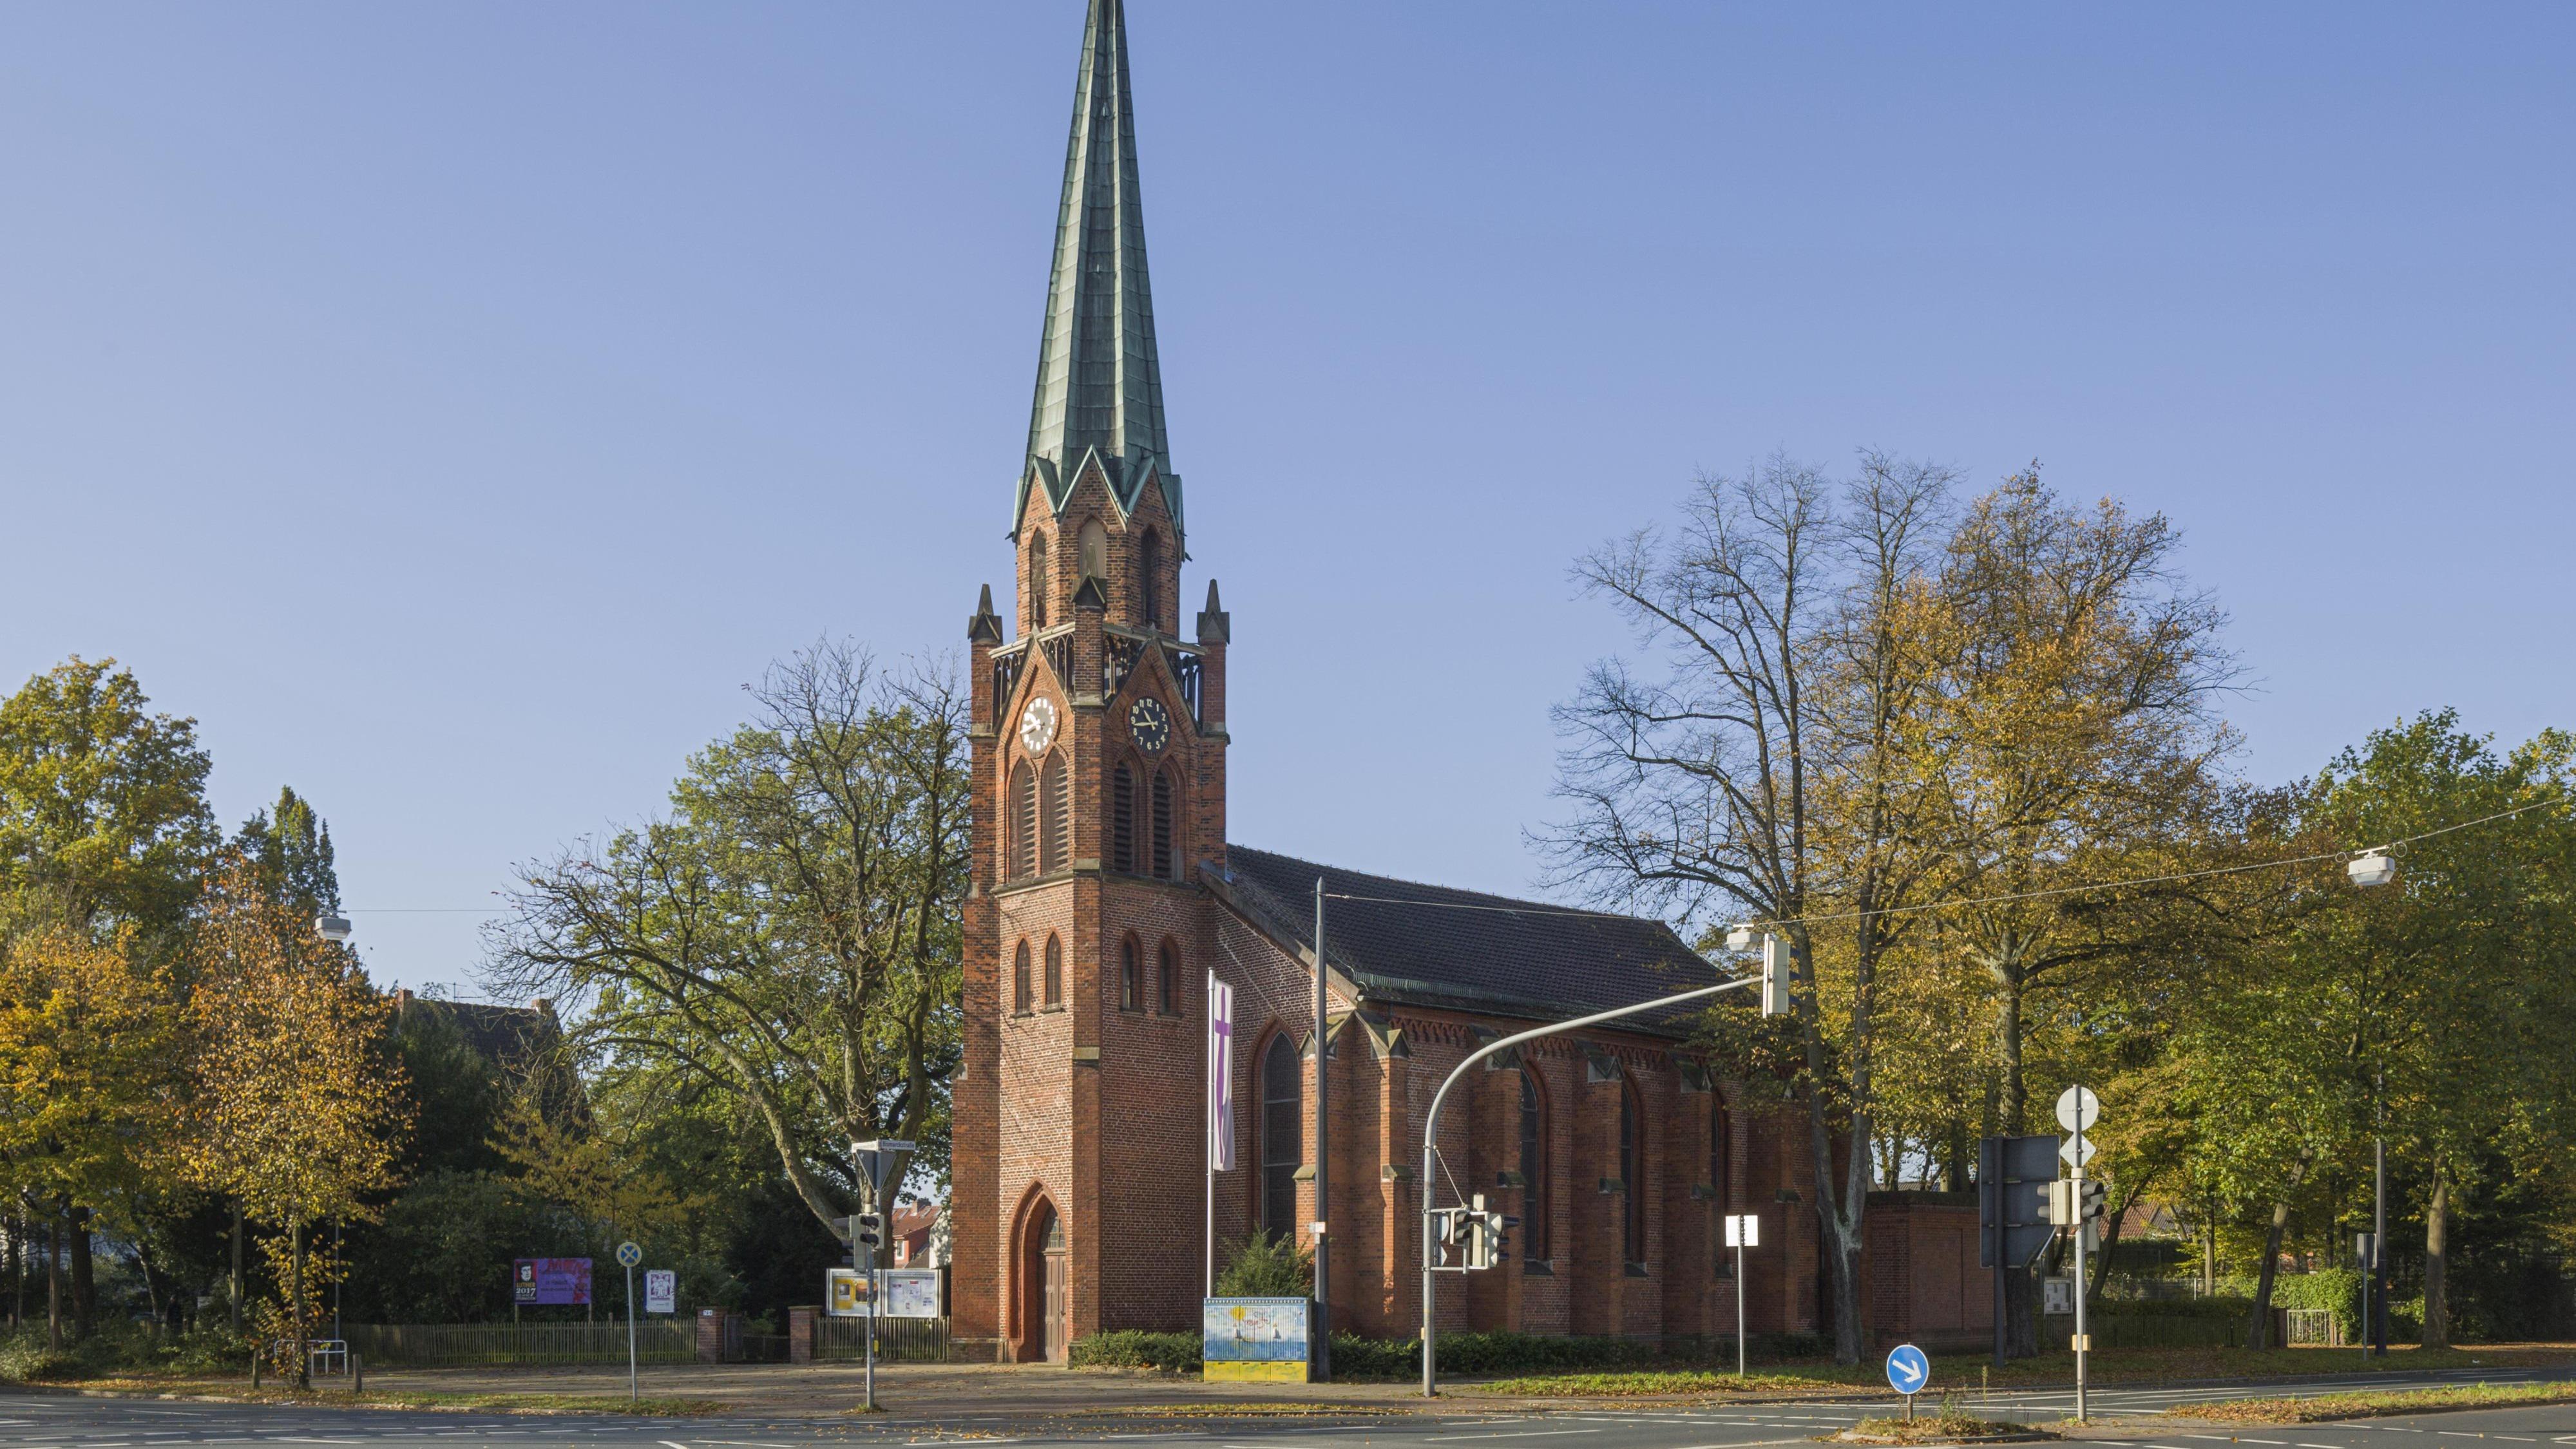 Alt Hasteder-Kirche - Evangelische Kirchengemeinde Alt-Hastedt, Bennigsenstr. 7 in Bremen